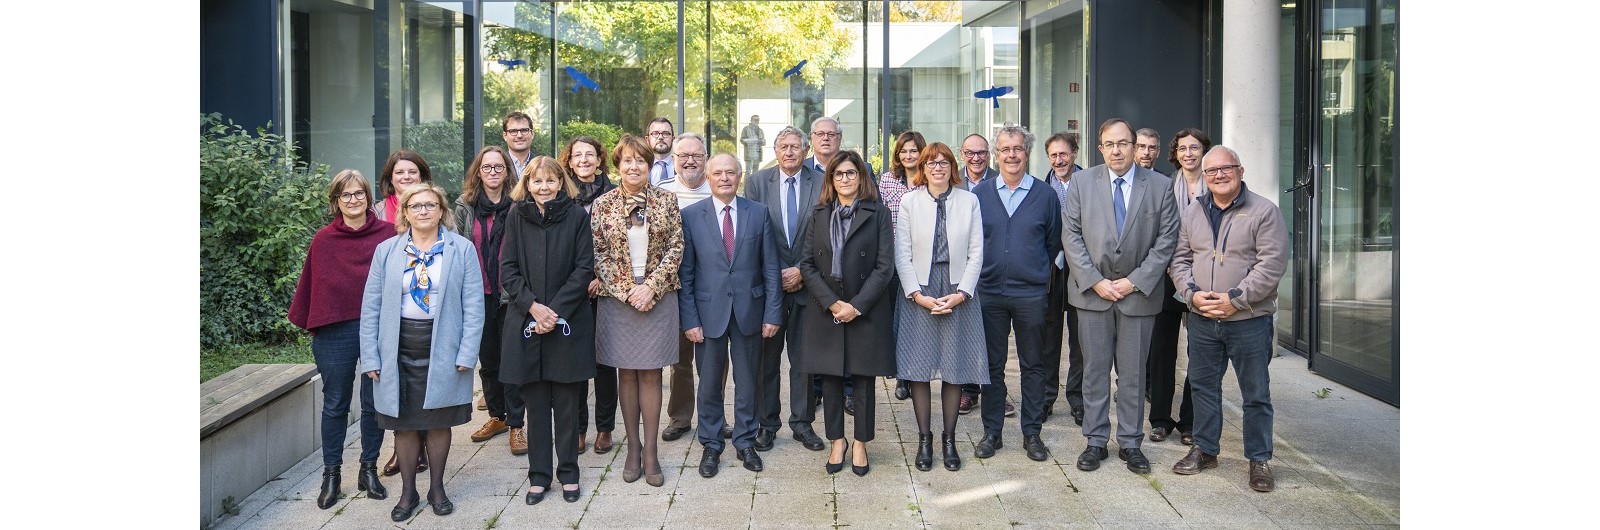 Photo de groupe du conseil d'administration de l'agence de l'eau Rhin-Meuse